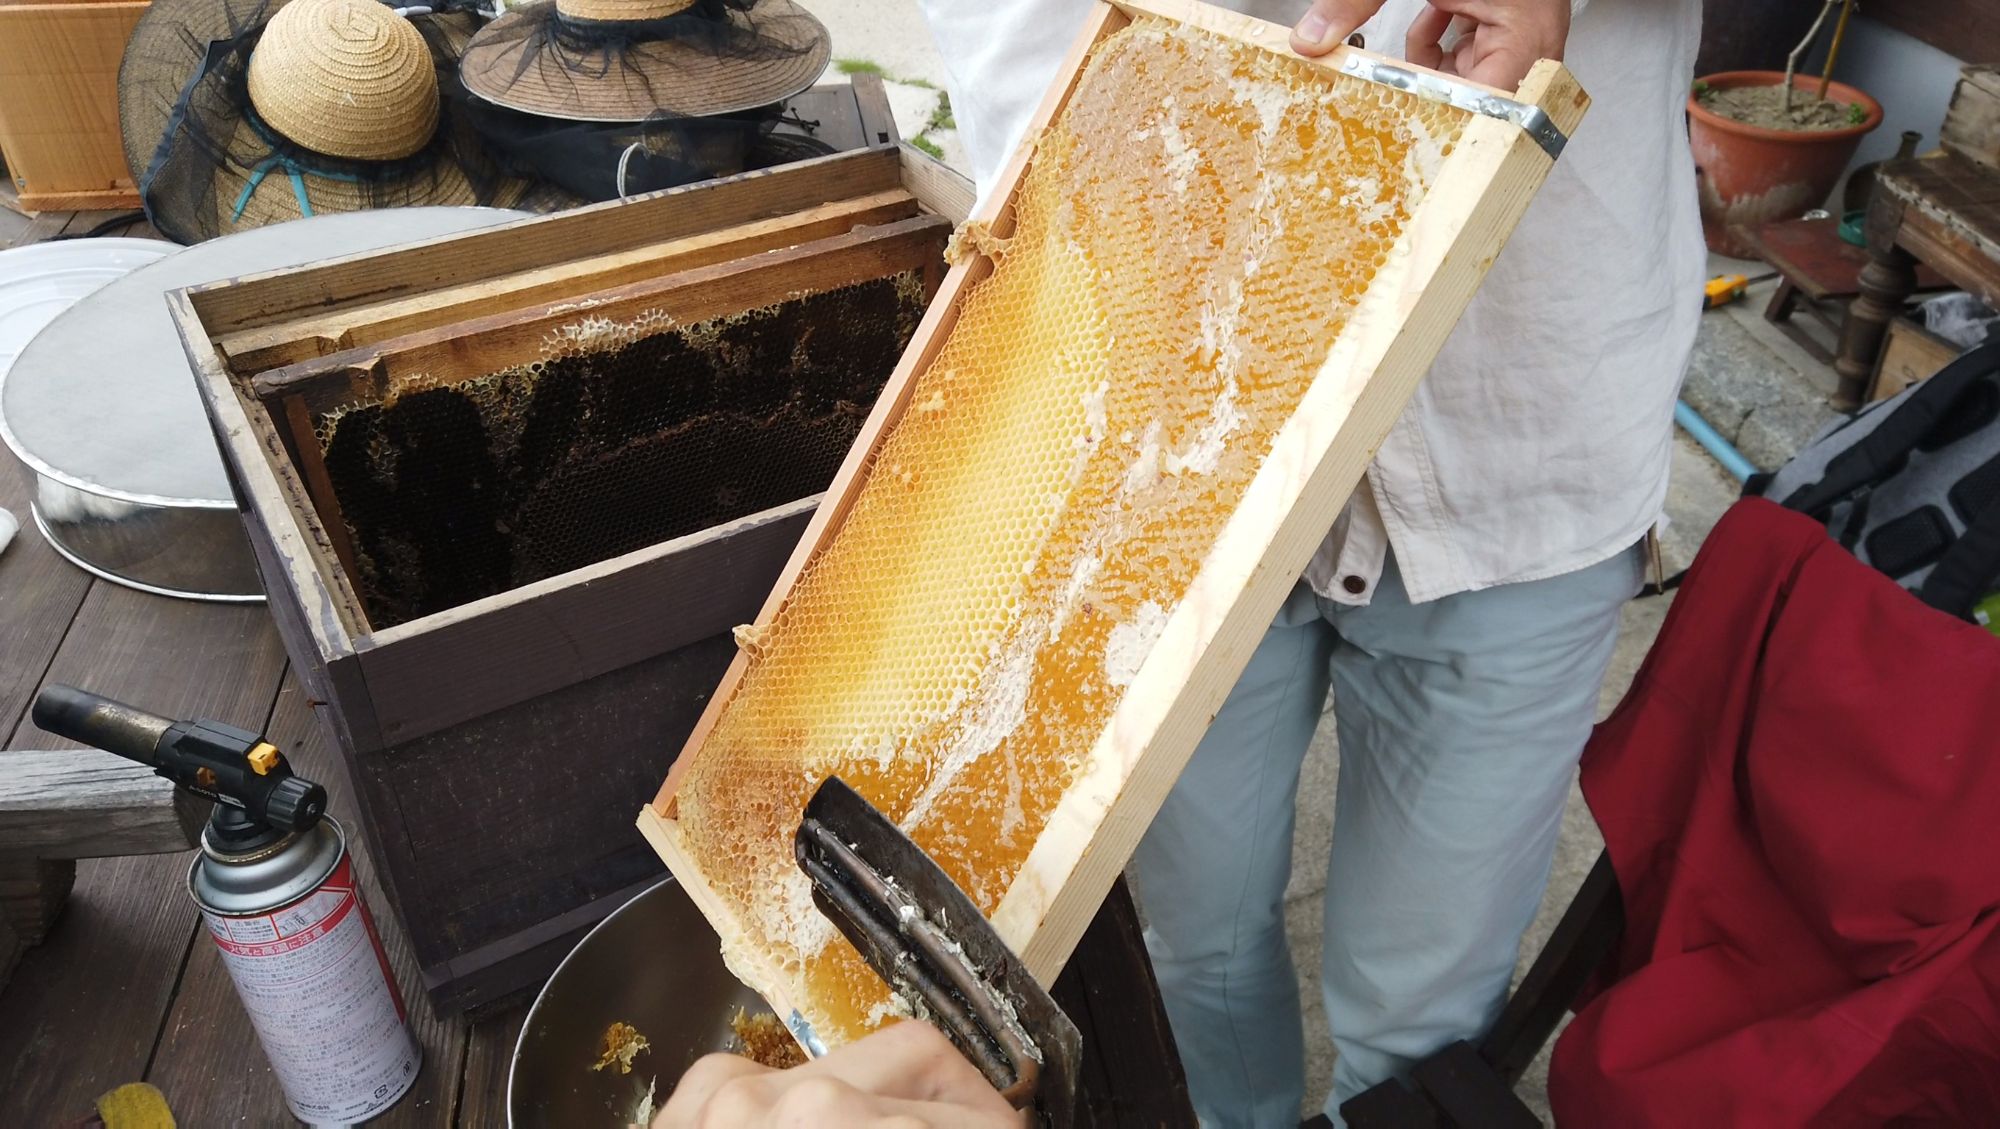 Honey Bee Apiary experience